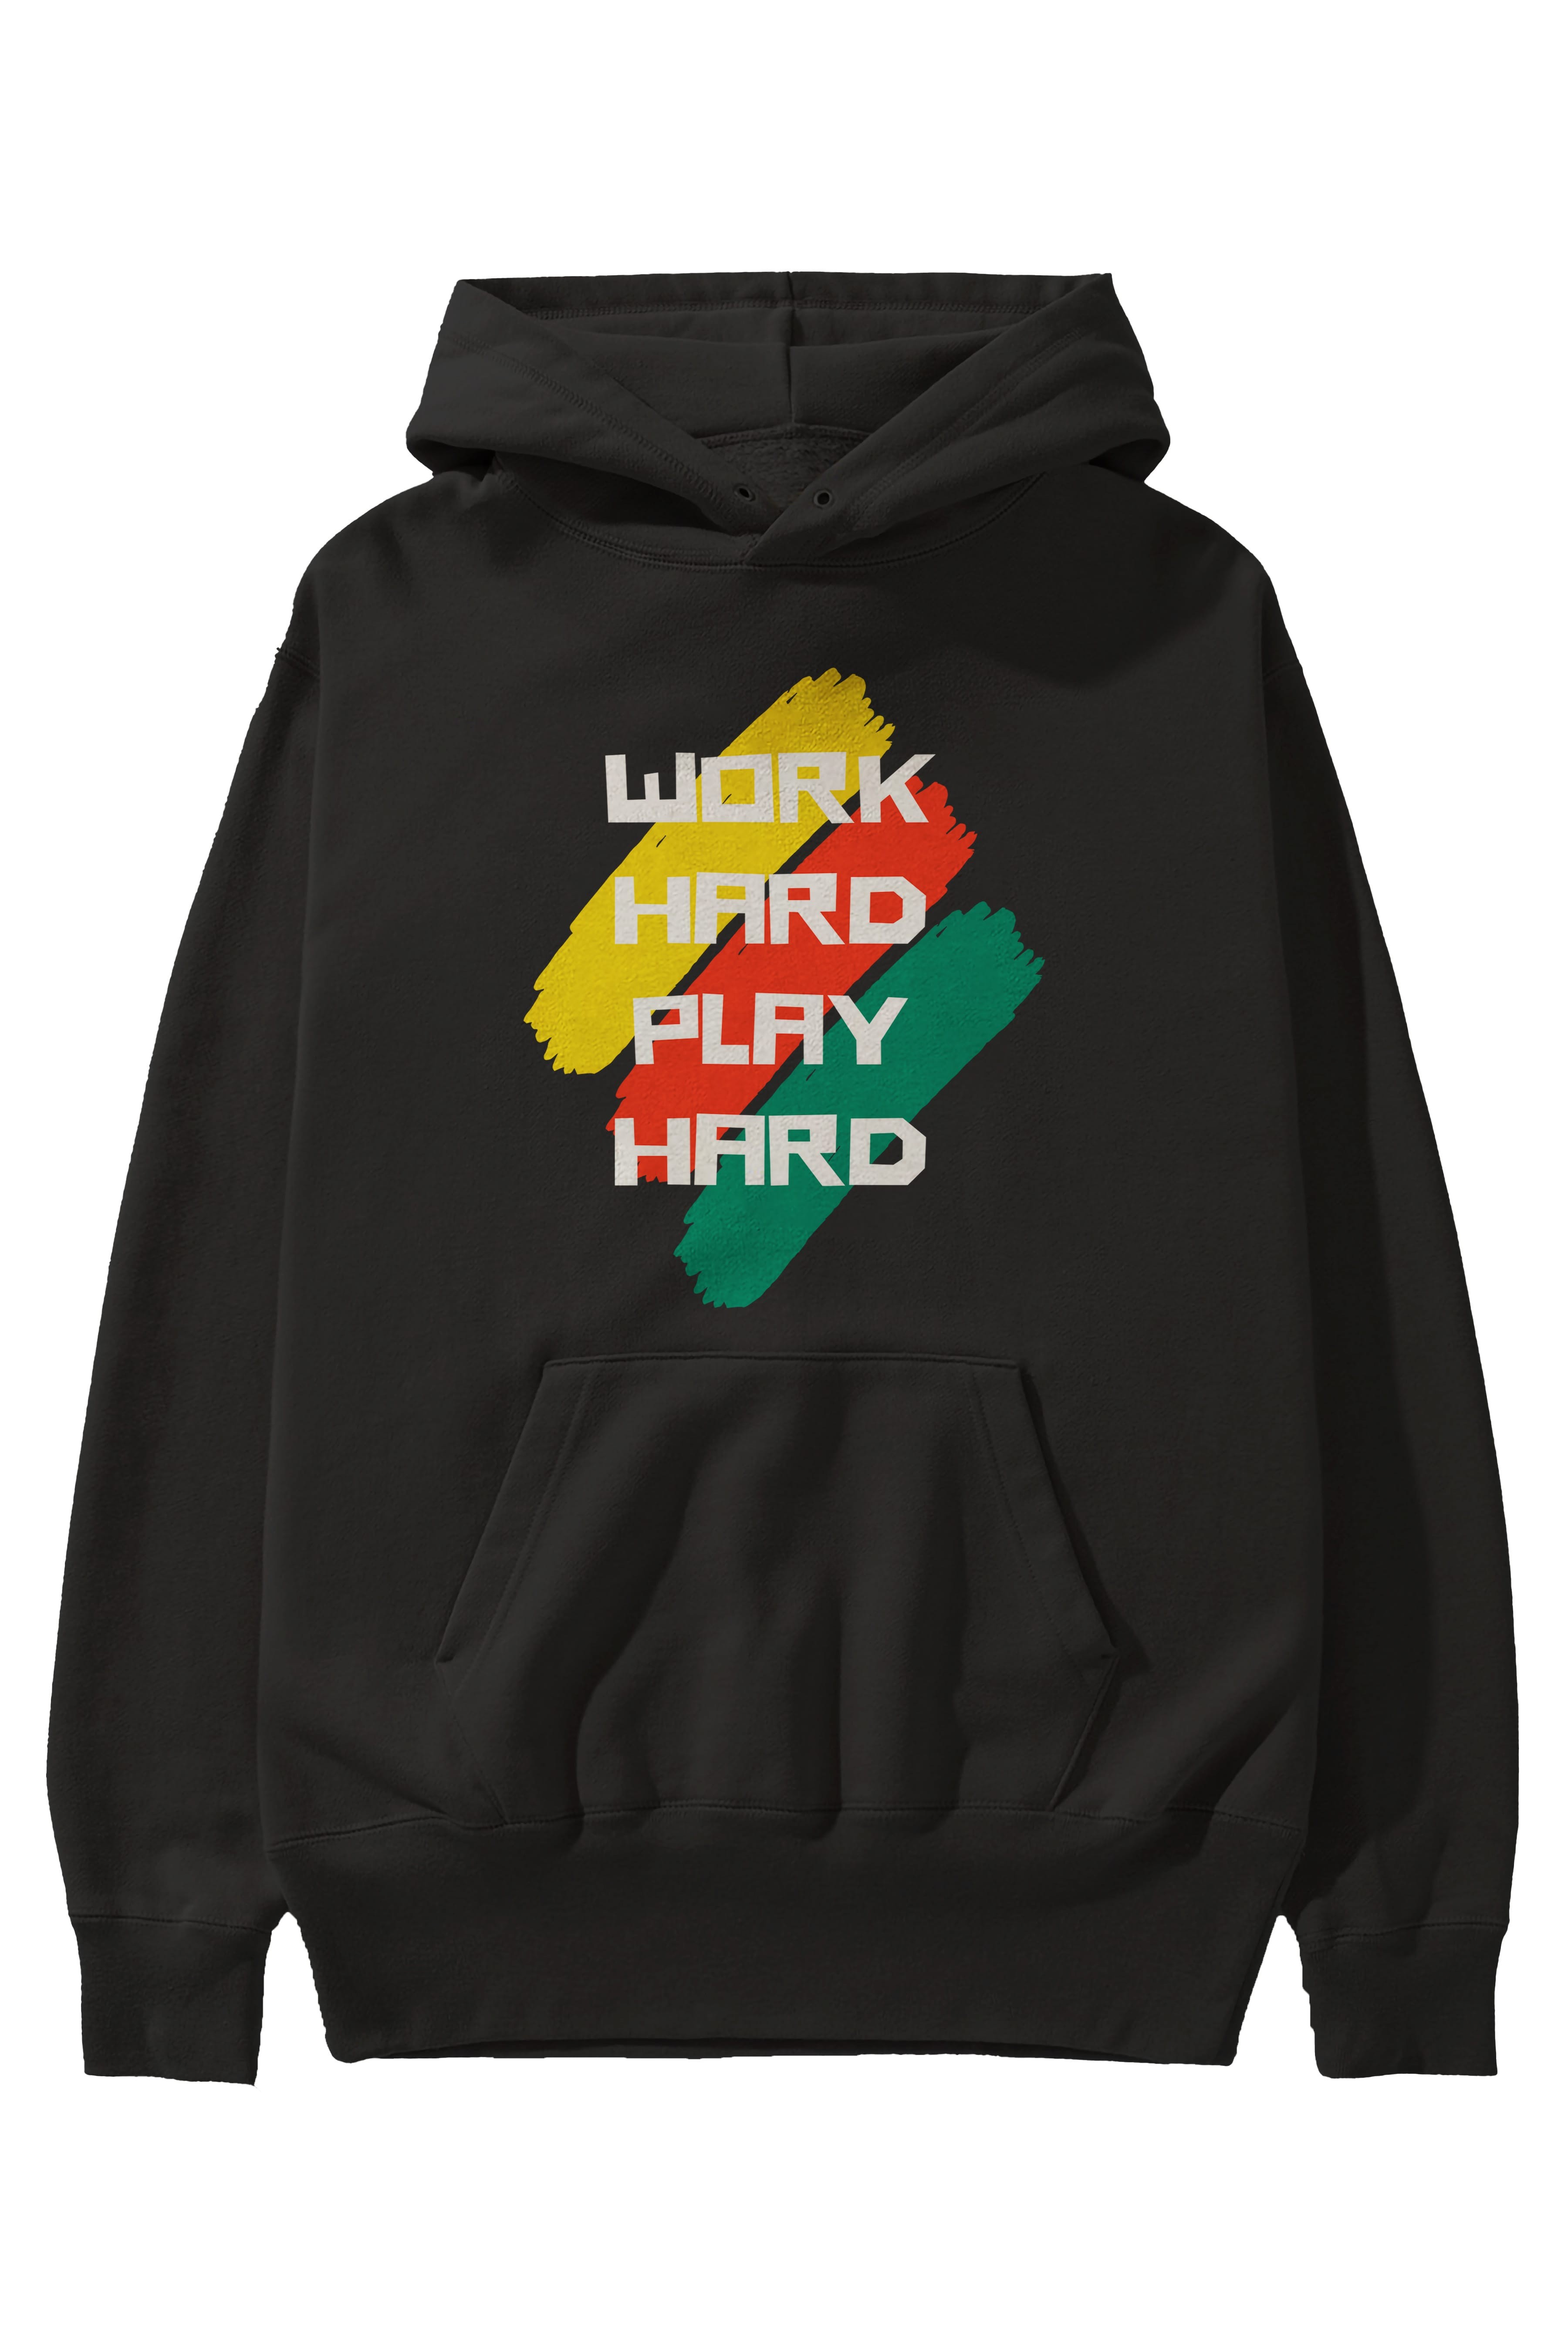 Work Hard Play Hard 2 Ön Baskılı Oversize Hoodie Kapüşonlu Sweatshirt Erkek Kadın Unisex